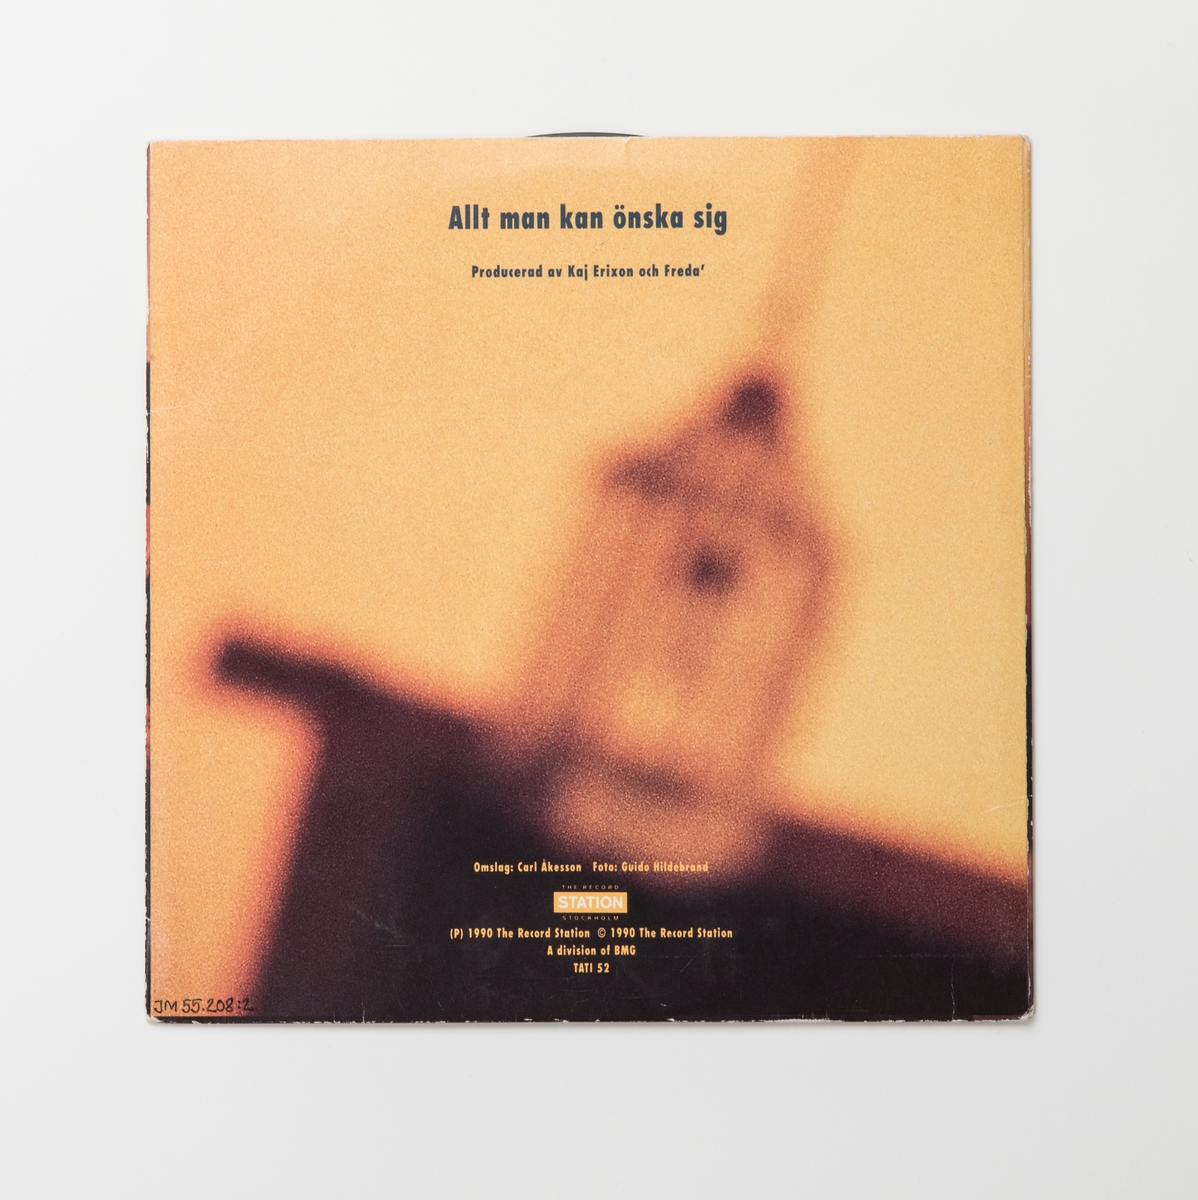 Singel-skiva av svart vinyl med vit pappersetikett, i omslag av papper. Framsidan av omslaget har ett färgfotografi av gruppen.

Innehåll
Sida A: Allt man kan önska sig
Sida B: Öppen för dig

JM 55208:1, Skiva
JM 55208:2, Omslag